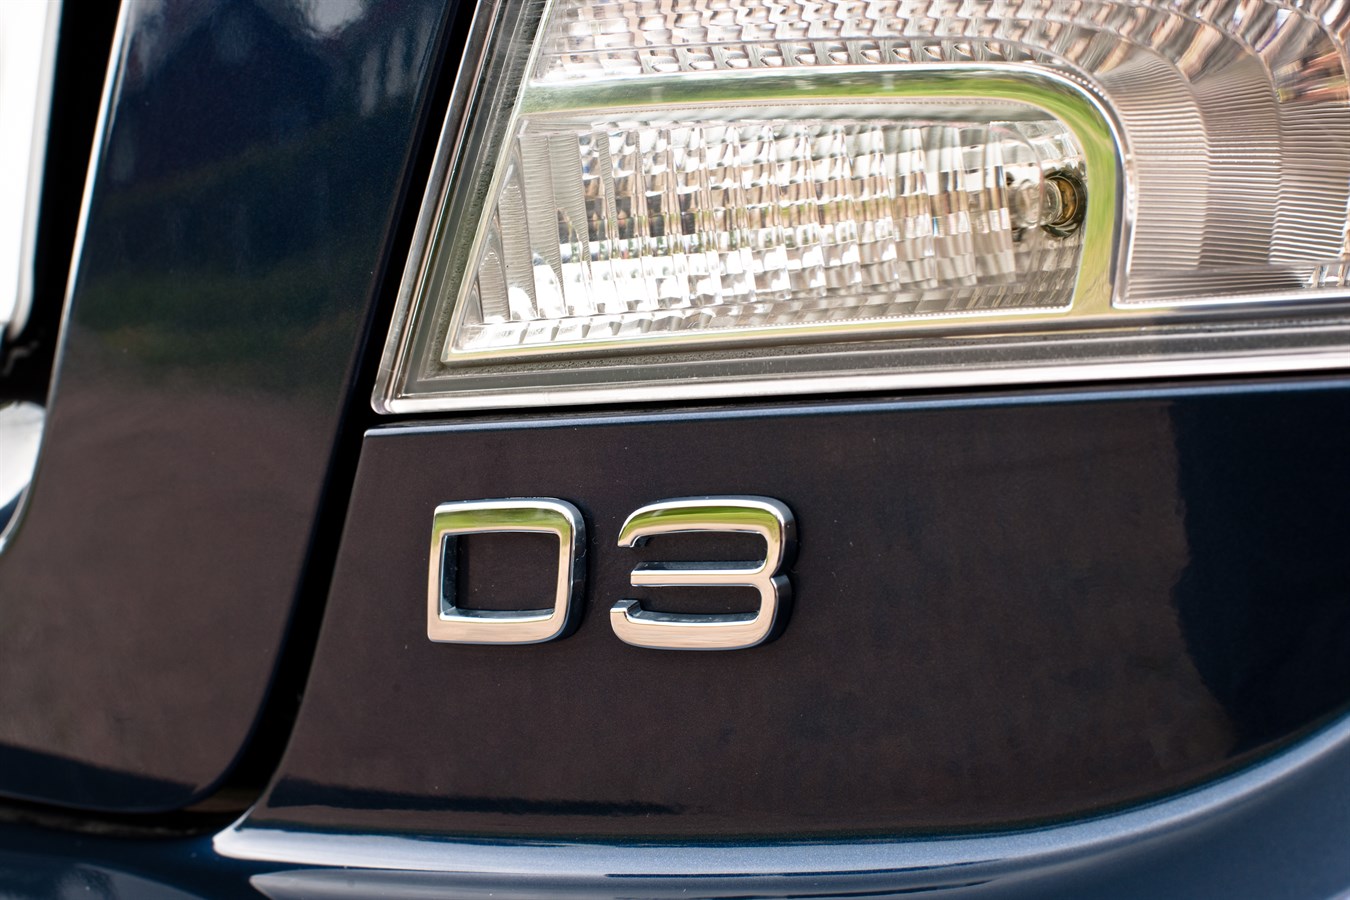 Volvo C70